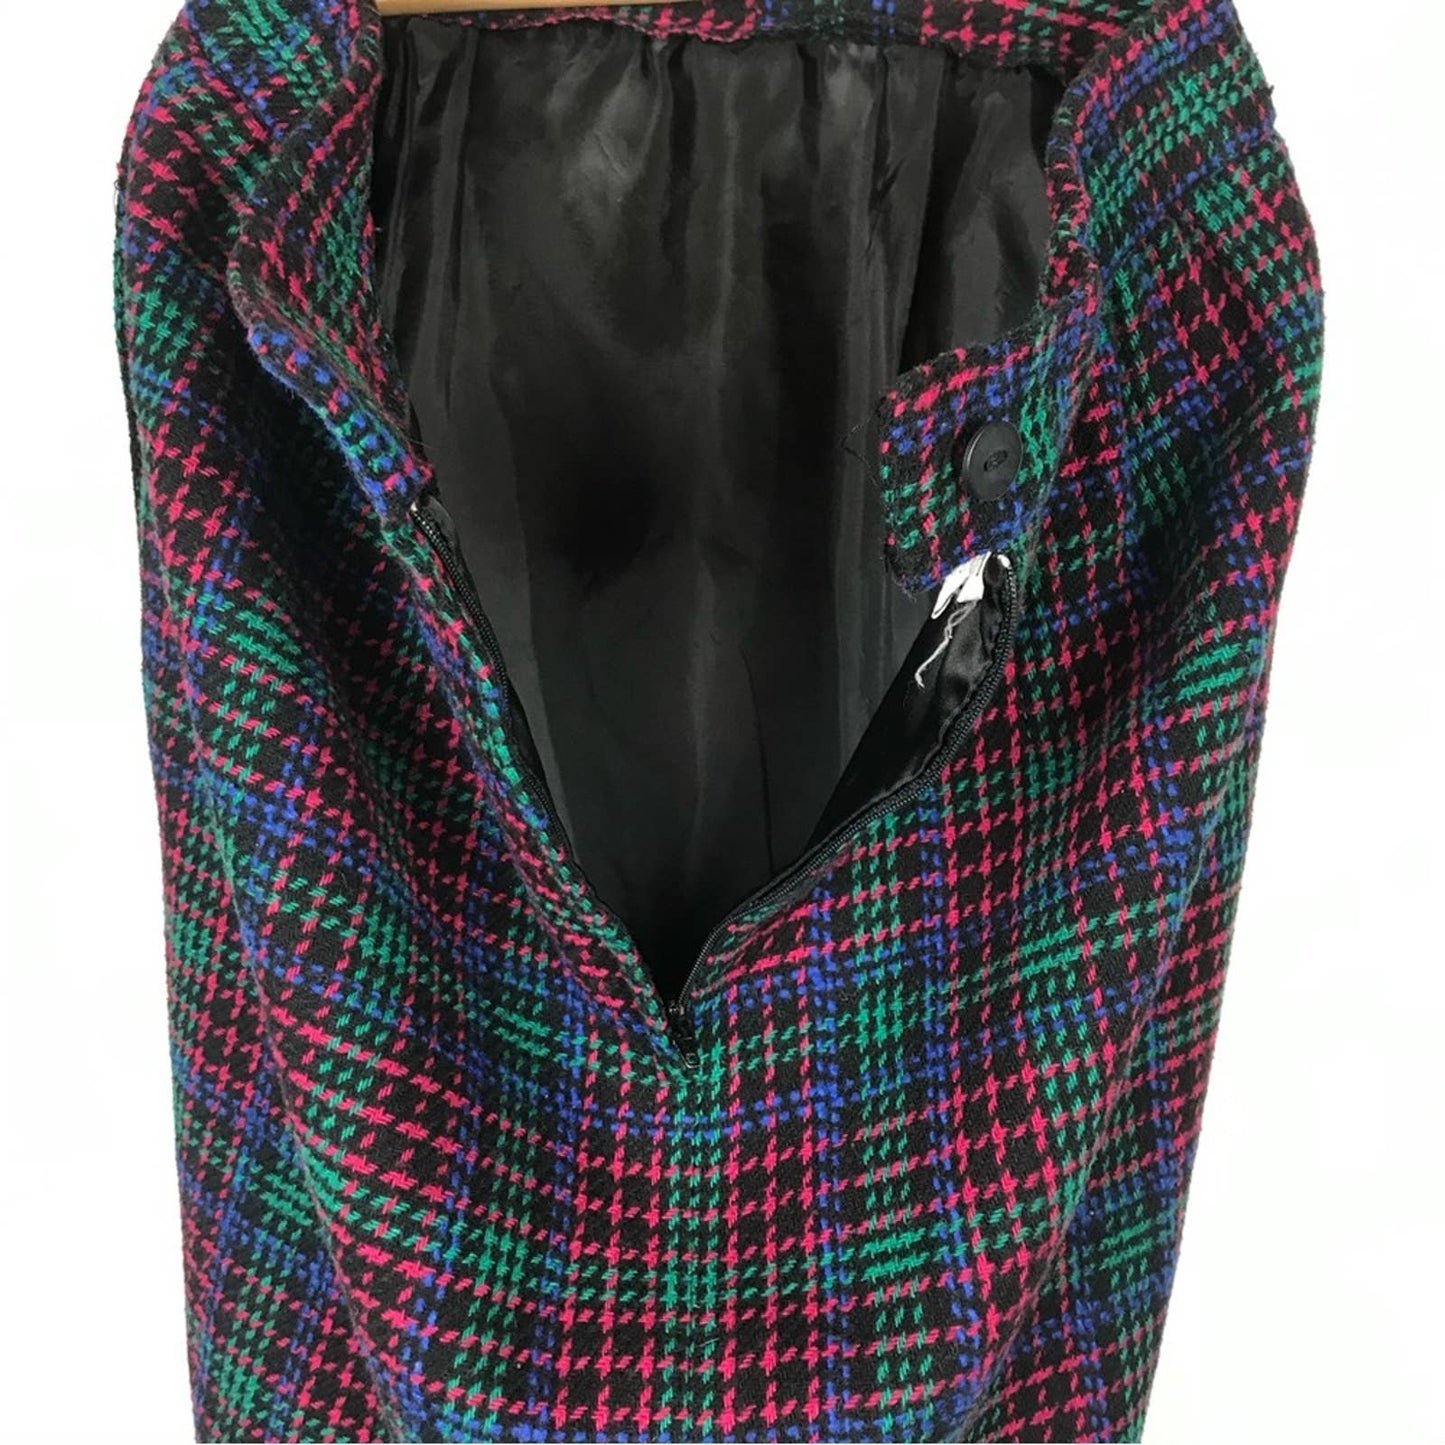 Vintage Joan Leslie Tweed Skirt Wool Blend Pink Green Blue Plaid Retro Skirt Size 6P